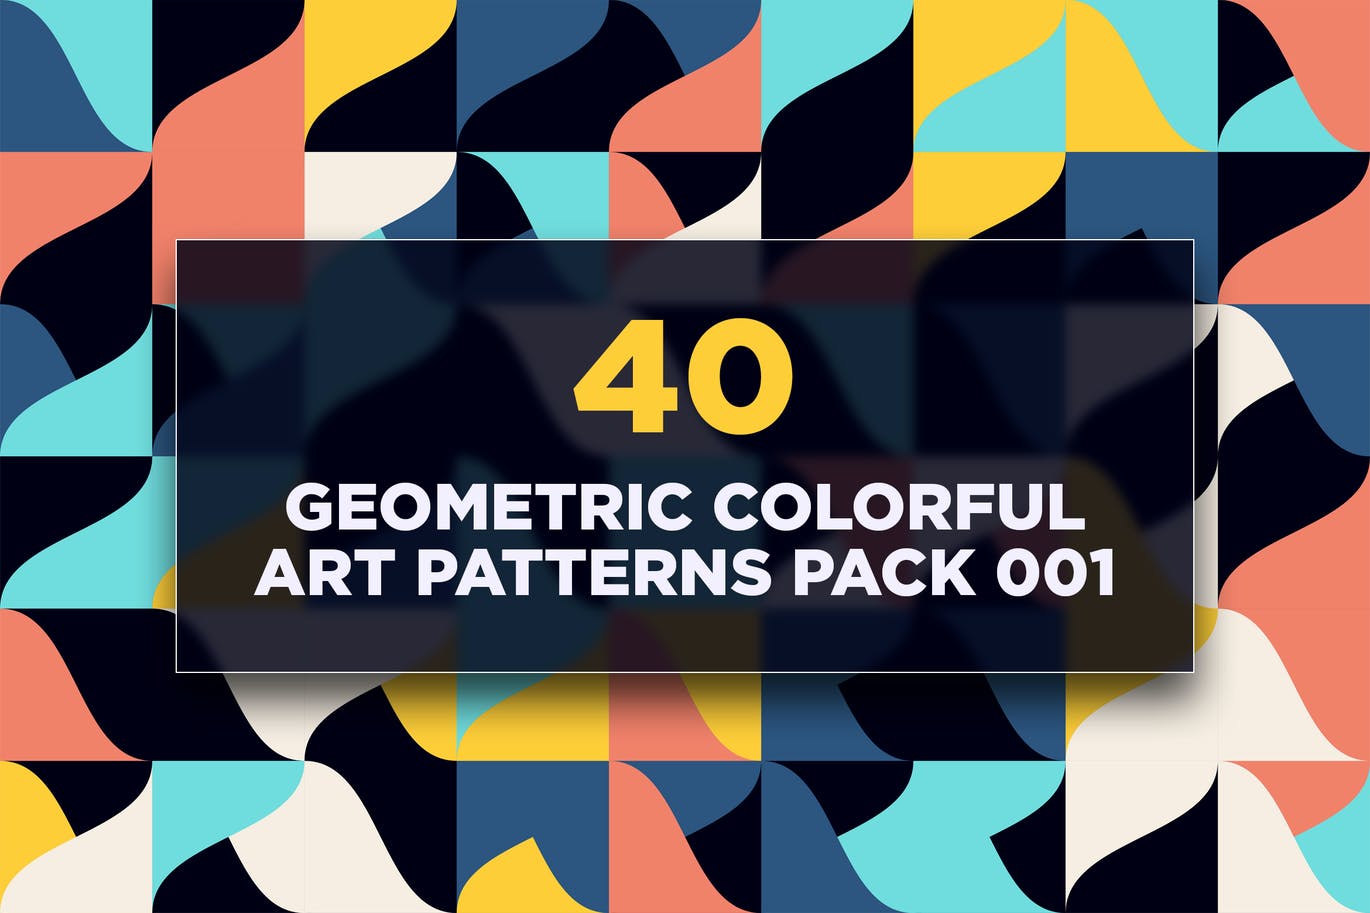 40个几何彩色艺术图案包v1 40 Geometric Colorful Art Patterns Pack 001 图片素材 第1张